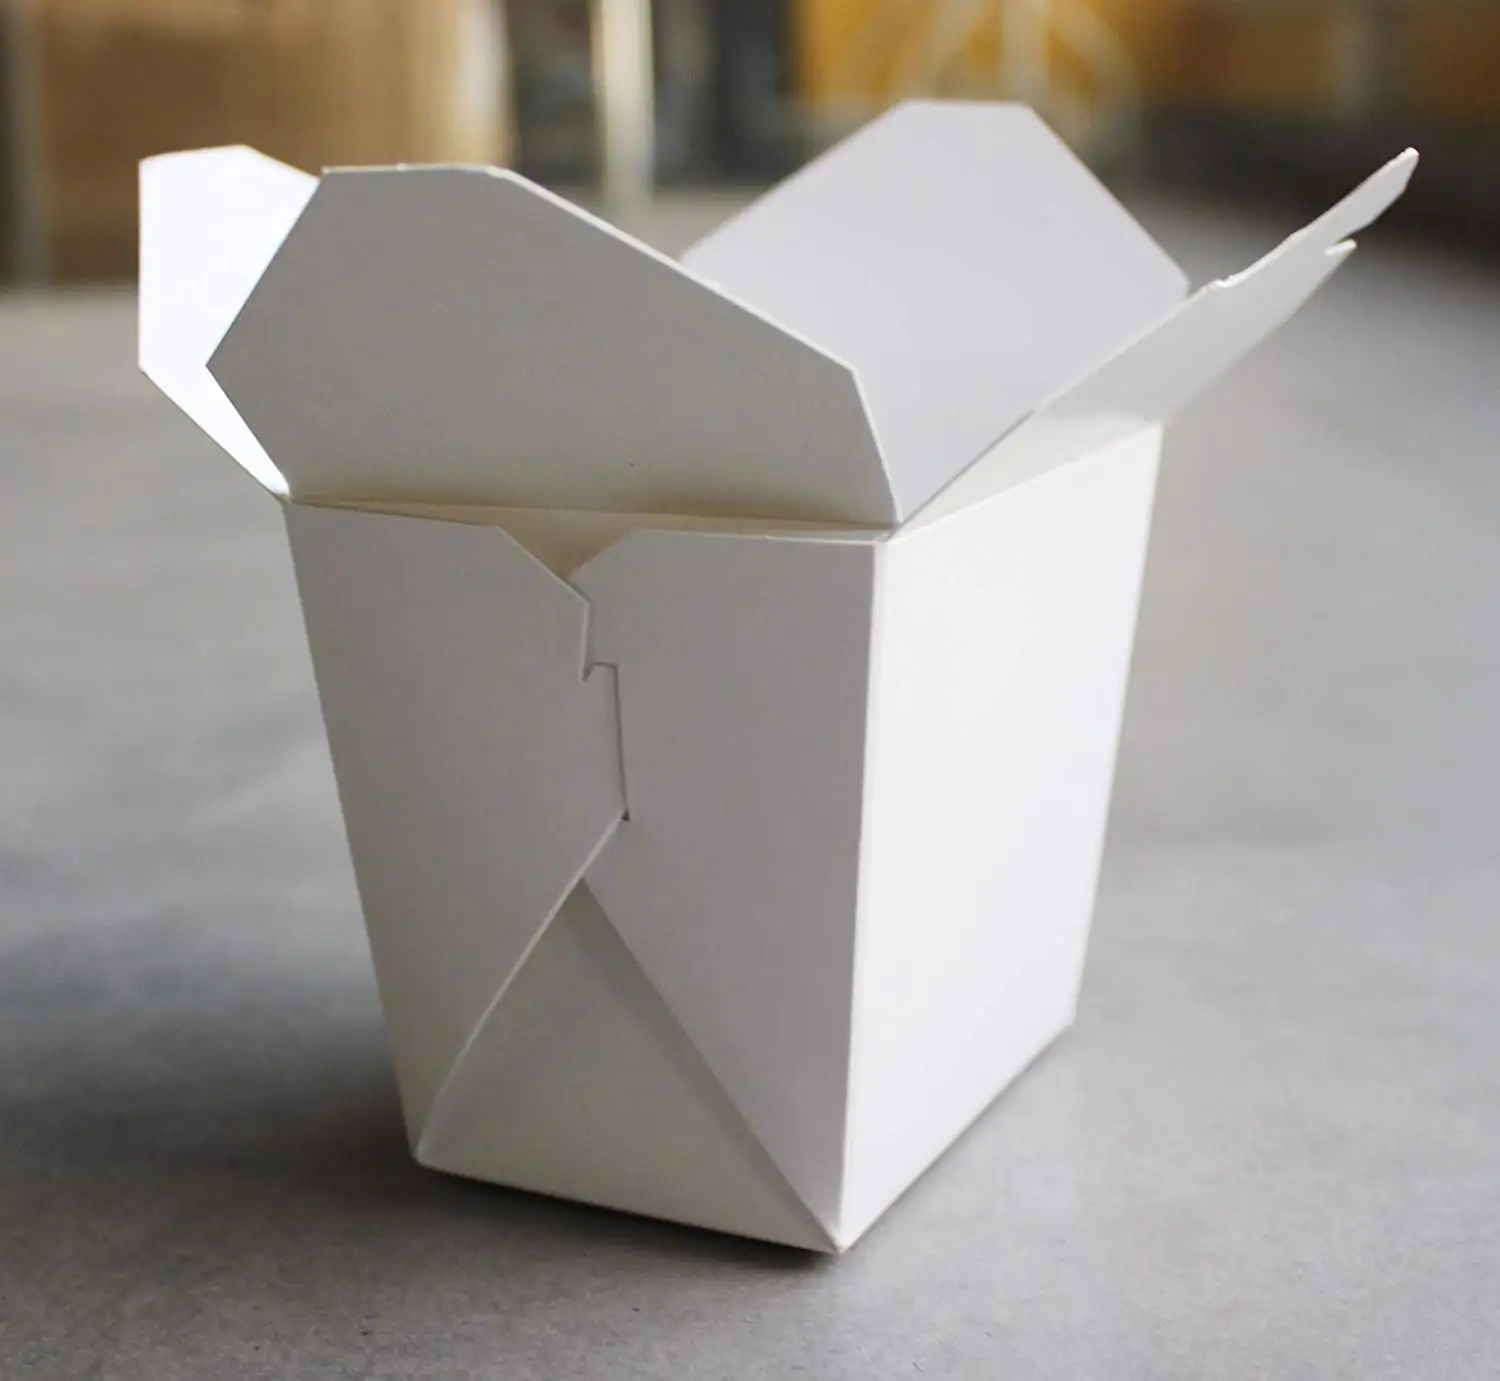 맞춤 식사 준비 16 oz 사각형 종이 테이크 아웃 식품 용기, 일반 흰색 반 쿼트 중국 아시아 상자